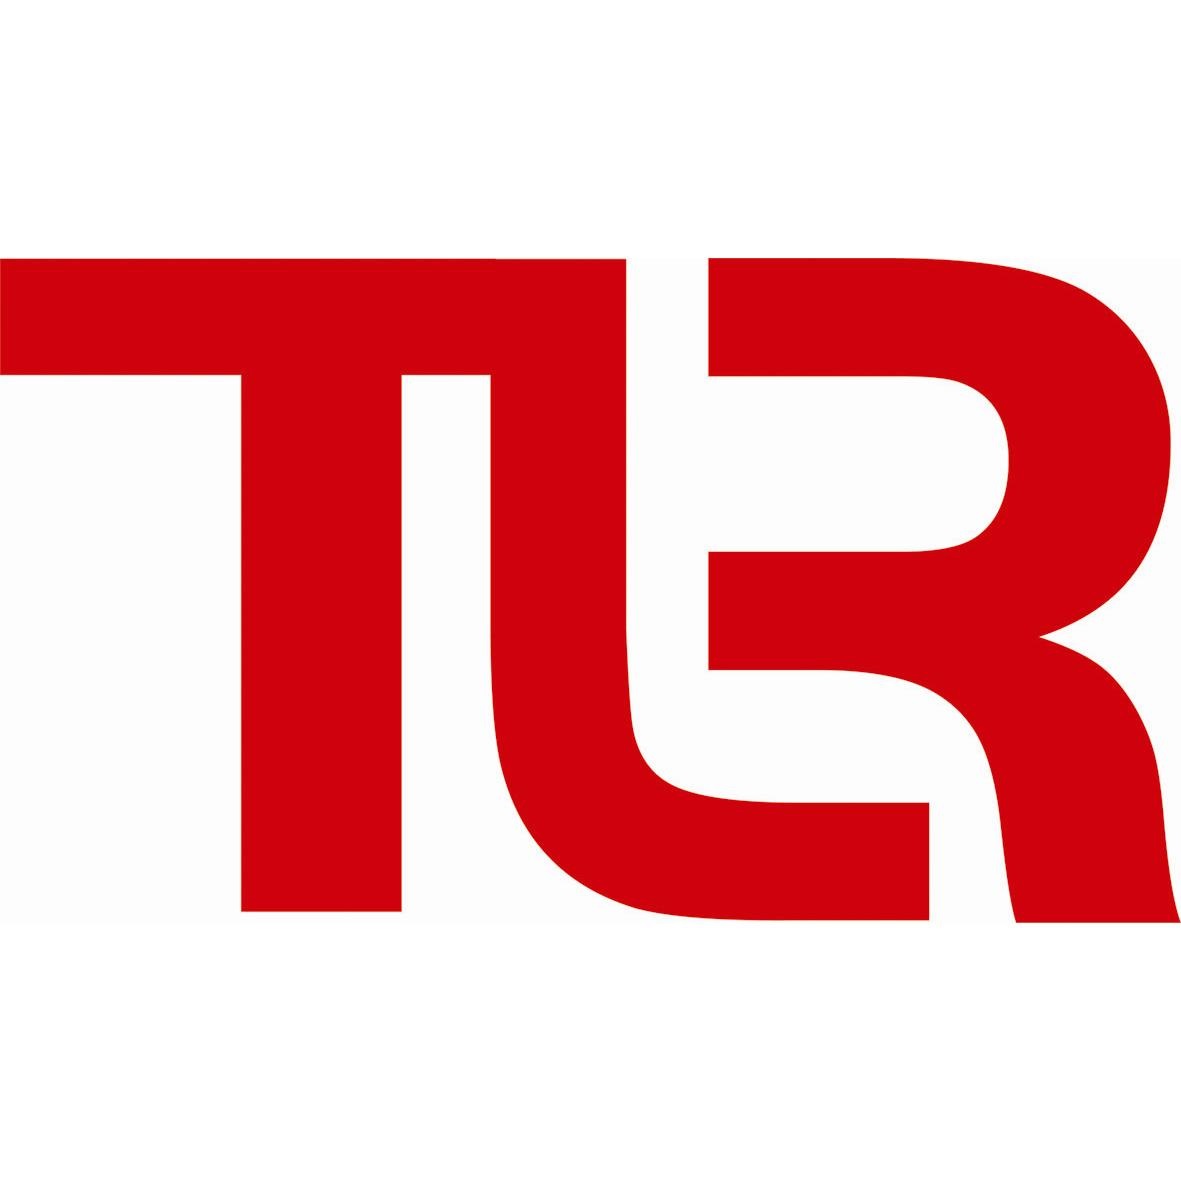 TAIWAN LEE RUBBER CO., LTD. logo